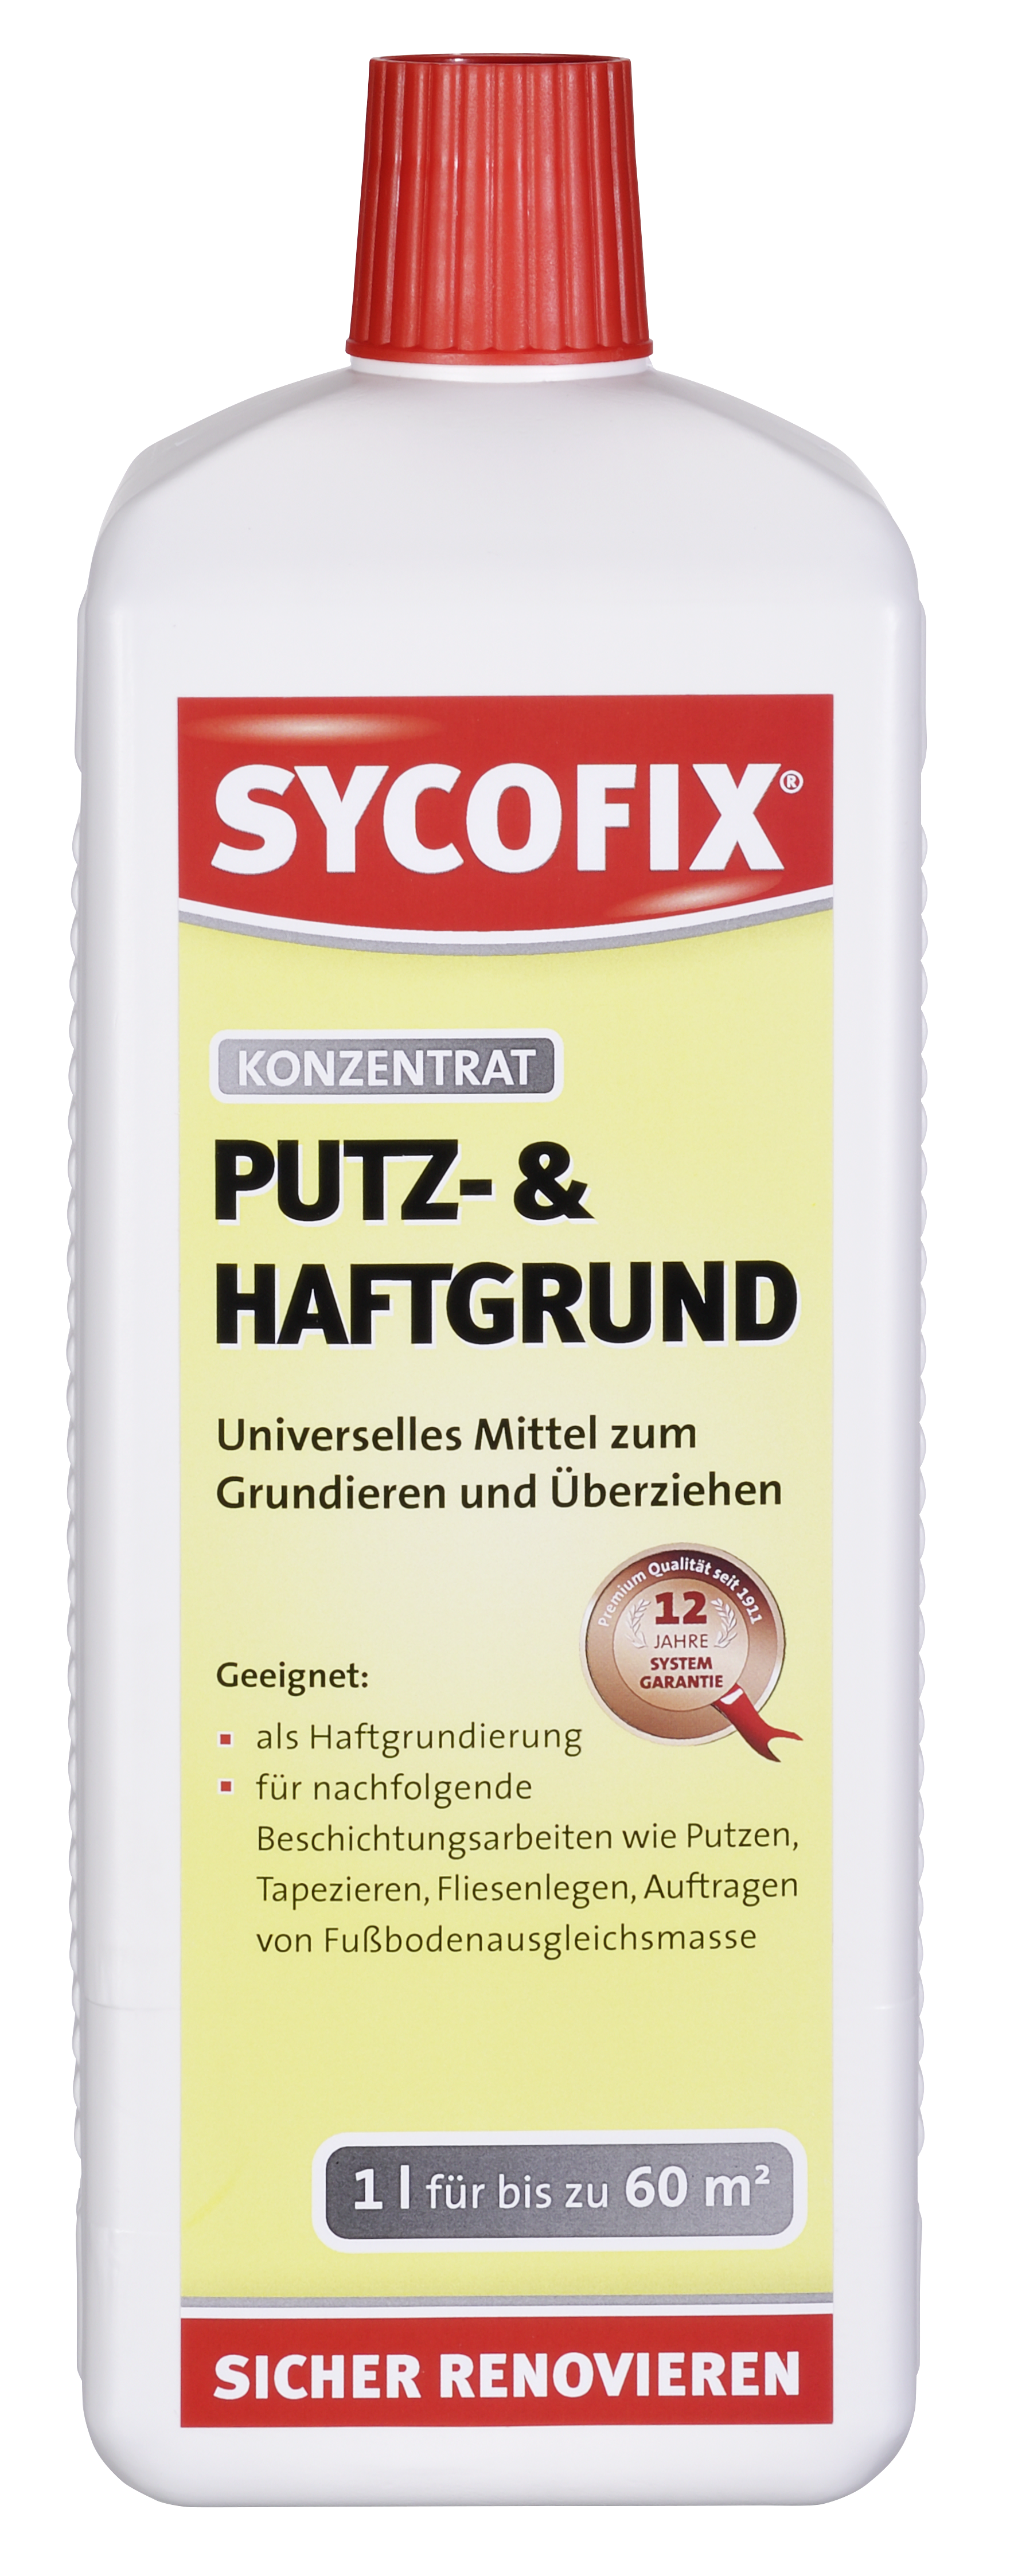 SYCOFIX ® Putz- und Haftgrund 1l